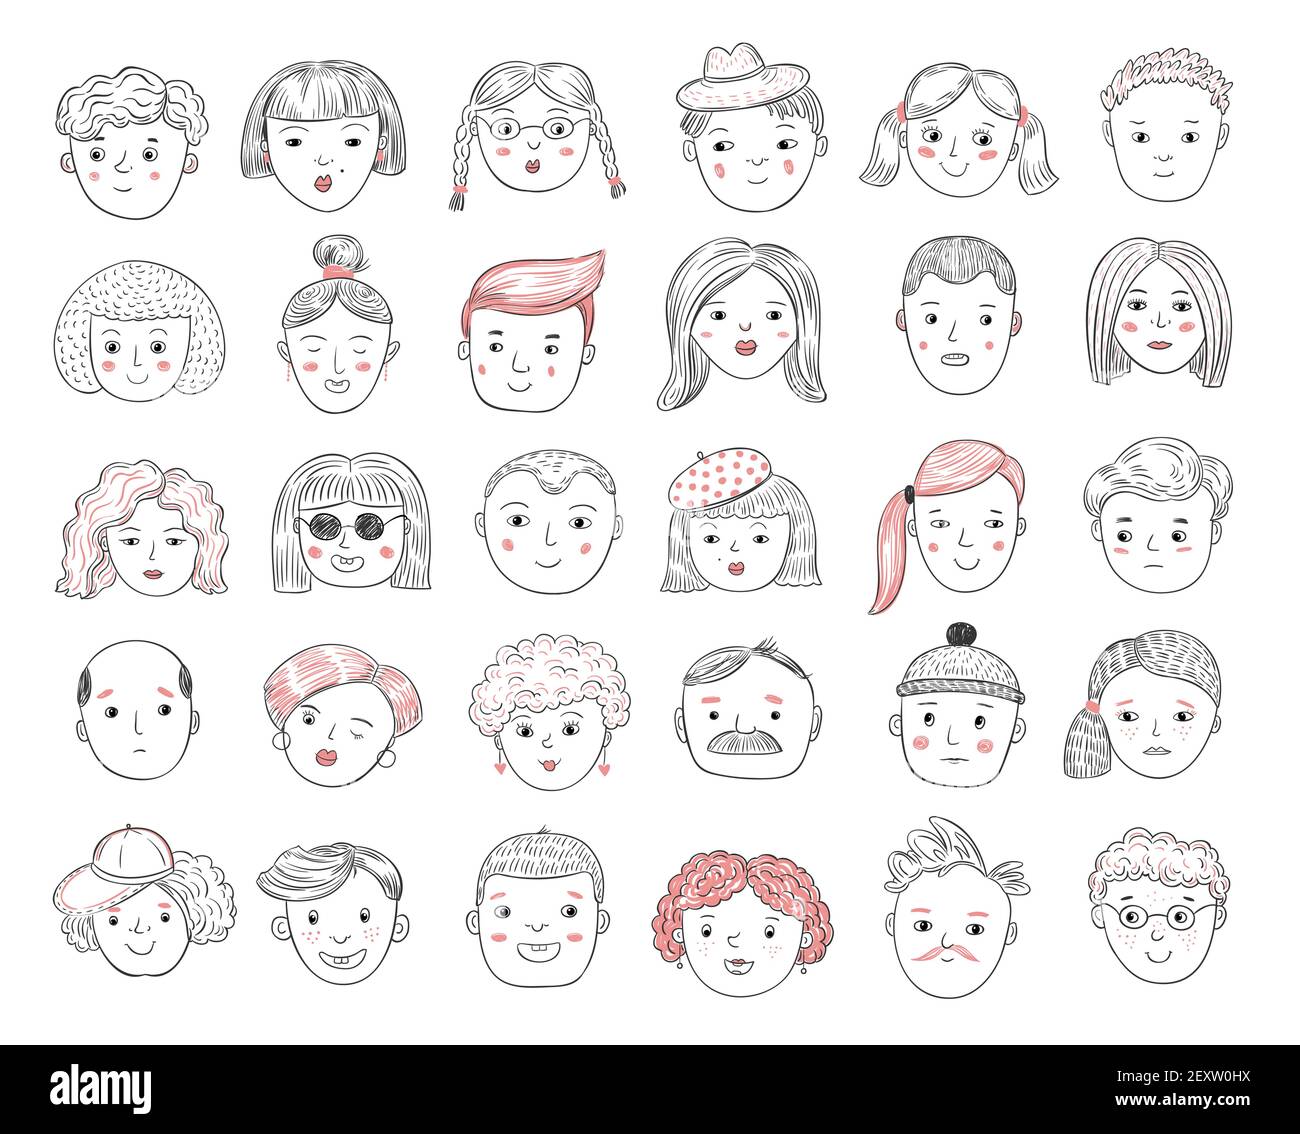 Disegnare avatar persone. Ritratti maschili e femminili, volti umani, uomini e donne profilo utente doodle icone vettoriali set. Profilo maschio e femmina, illustrazione dell'utente dello schizzo Illustrazione Vettoriale